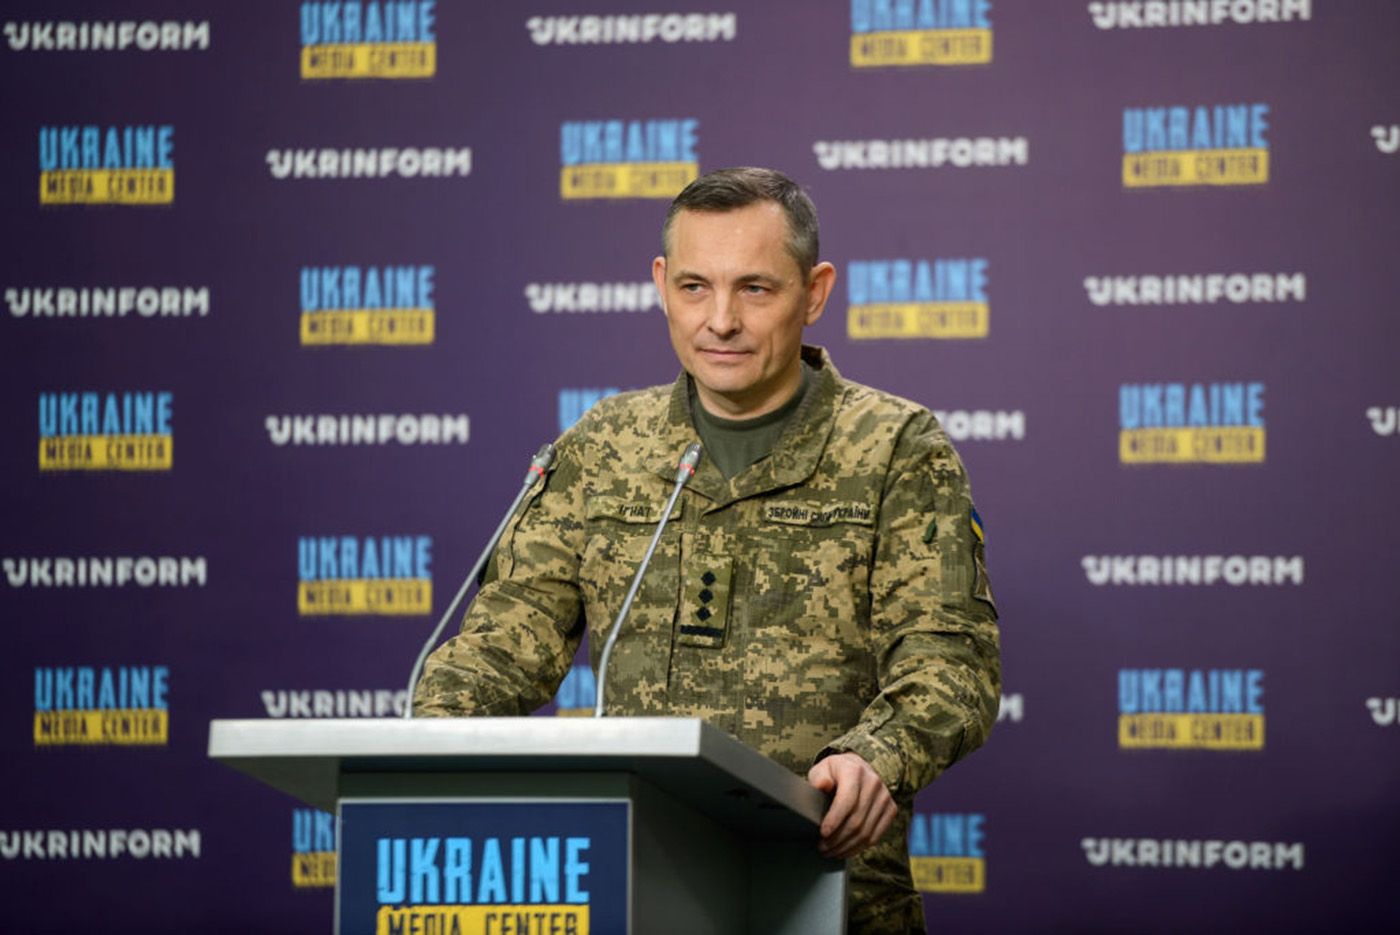 Игнат объяснил, почему тревога только в части Украины